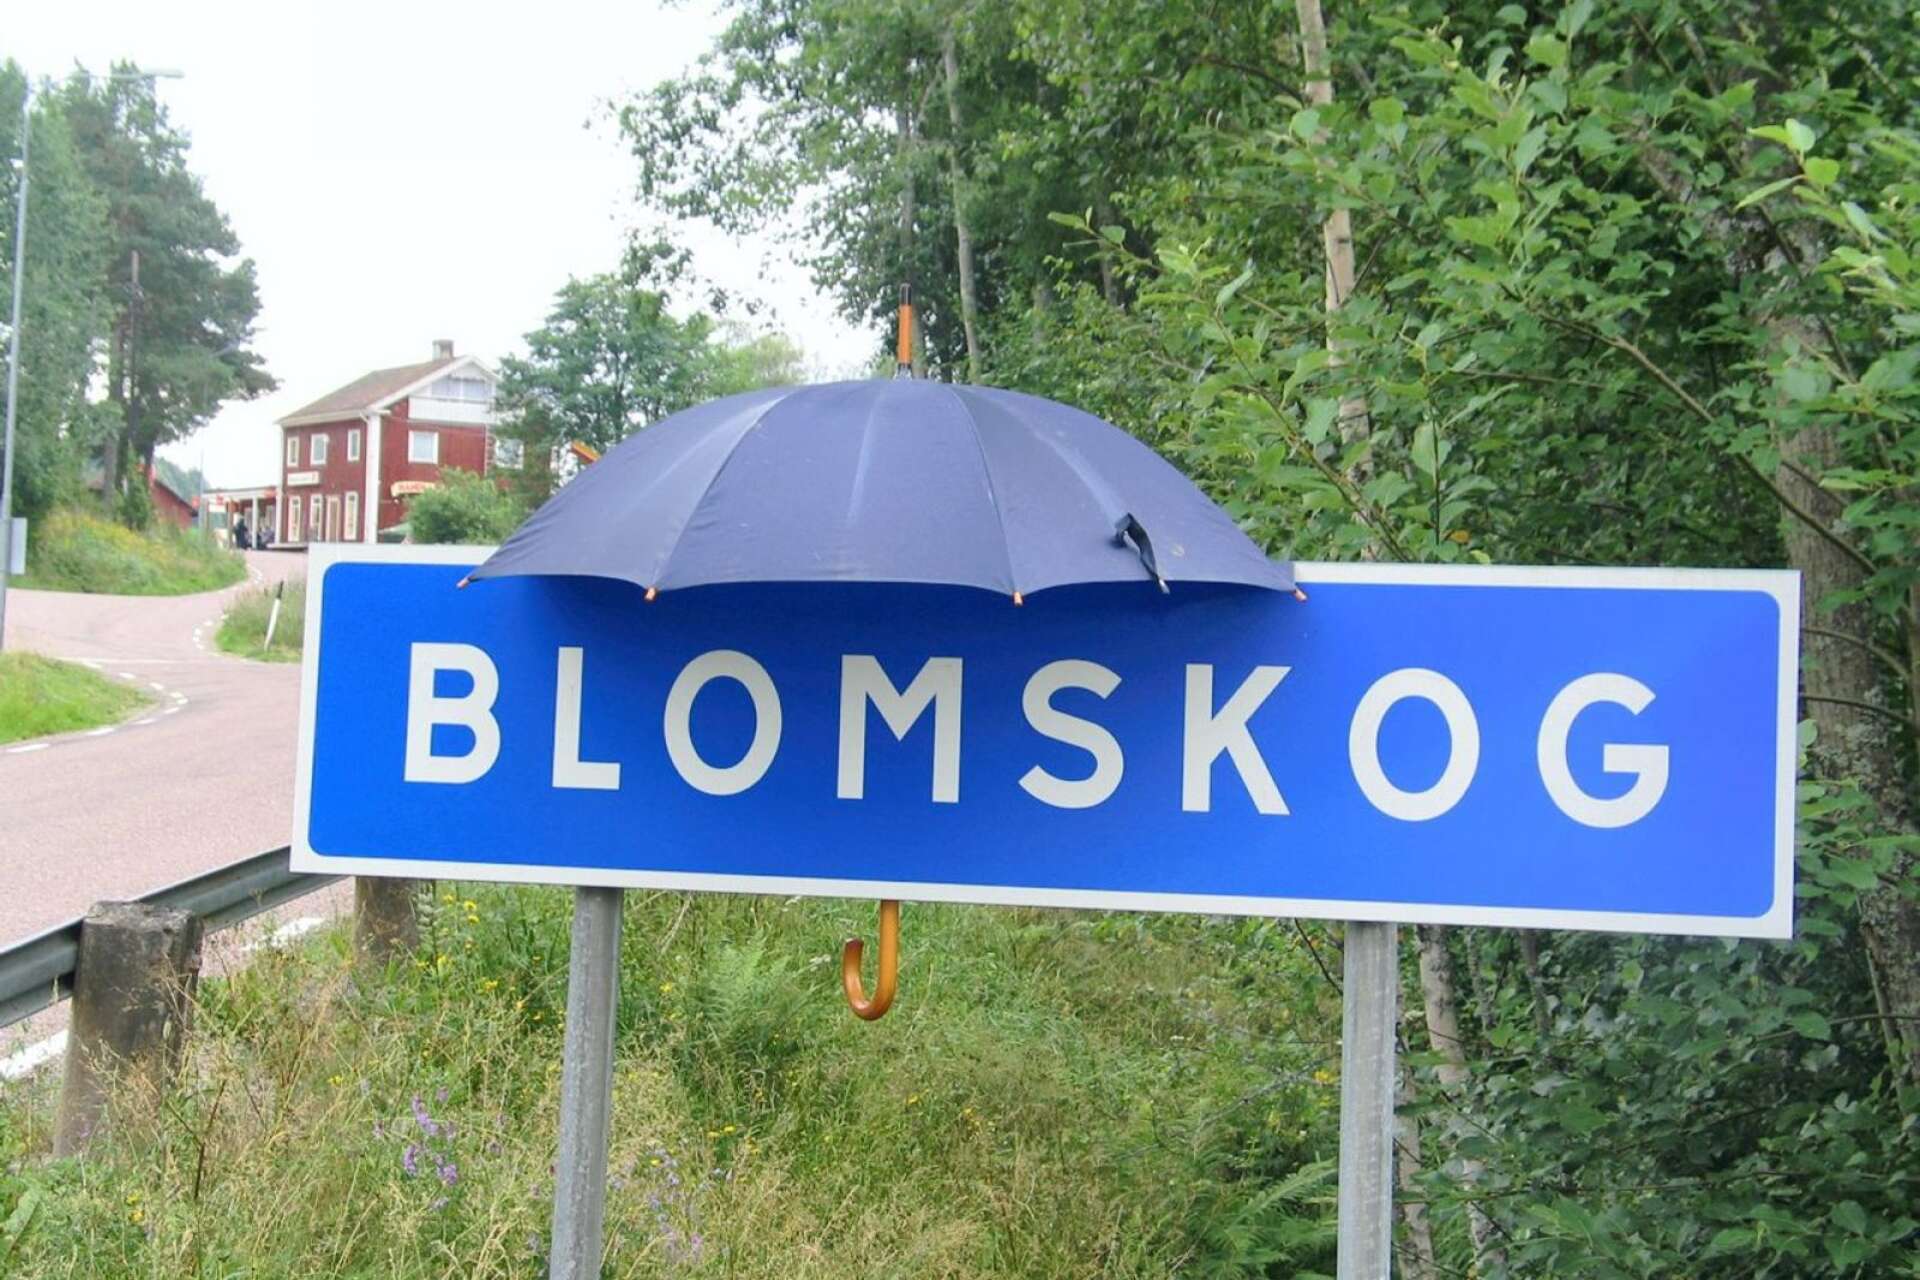 I Blomskog i Värmland föll till exempel 86 millimeter regn på ett dygn i somras, skriver Hampe Mobärg, Caroline Harrå och Joacim Nordh.